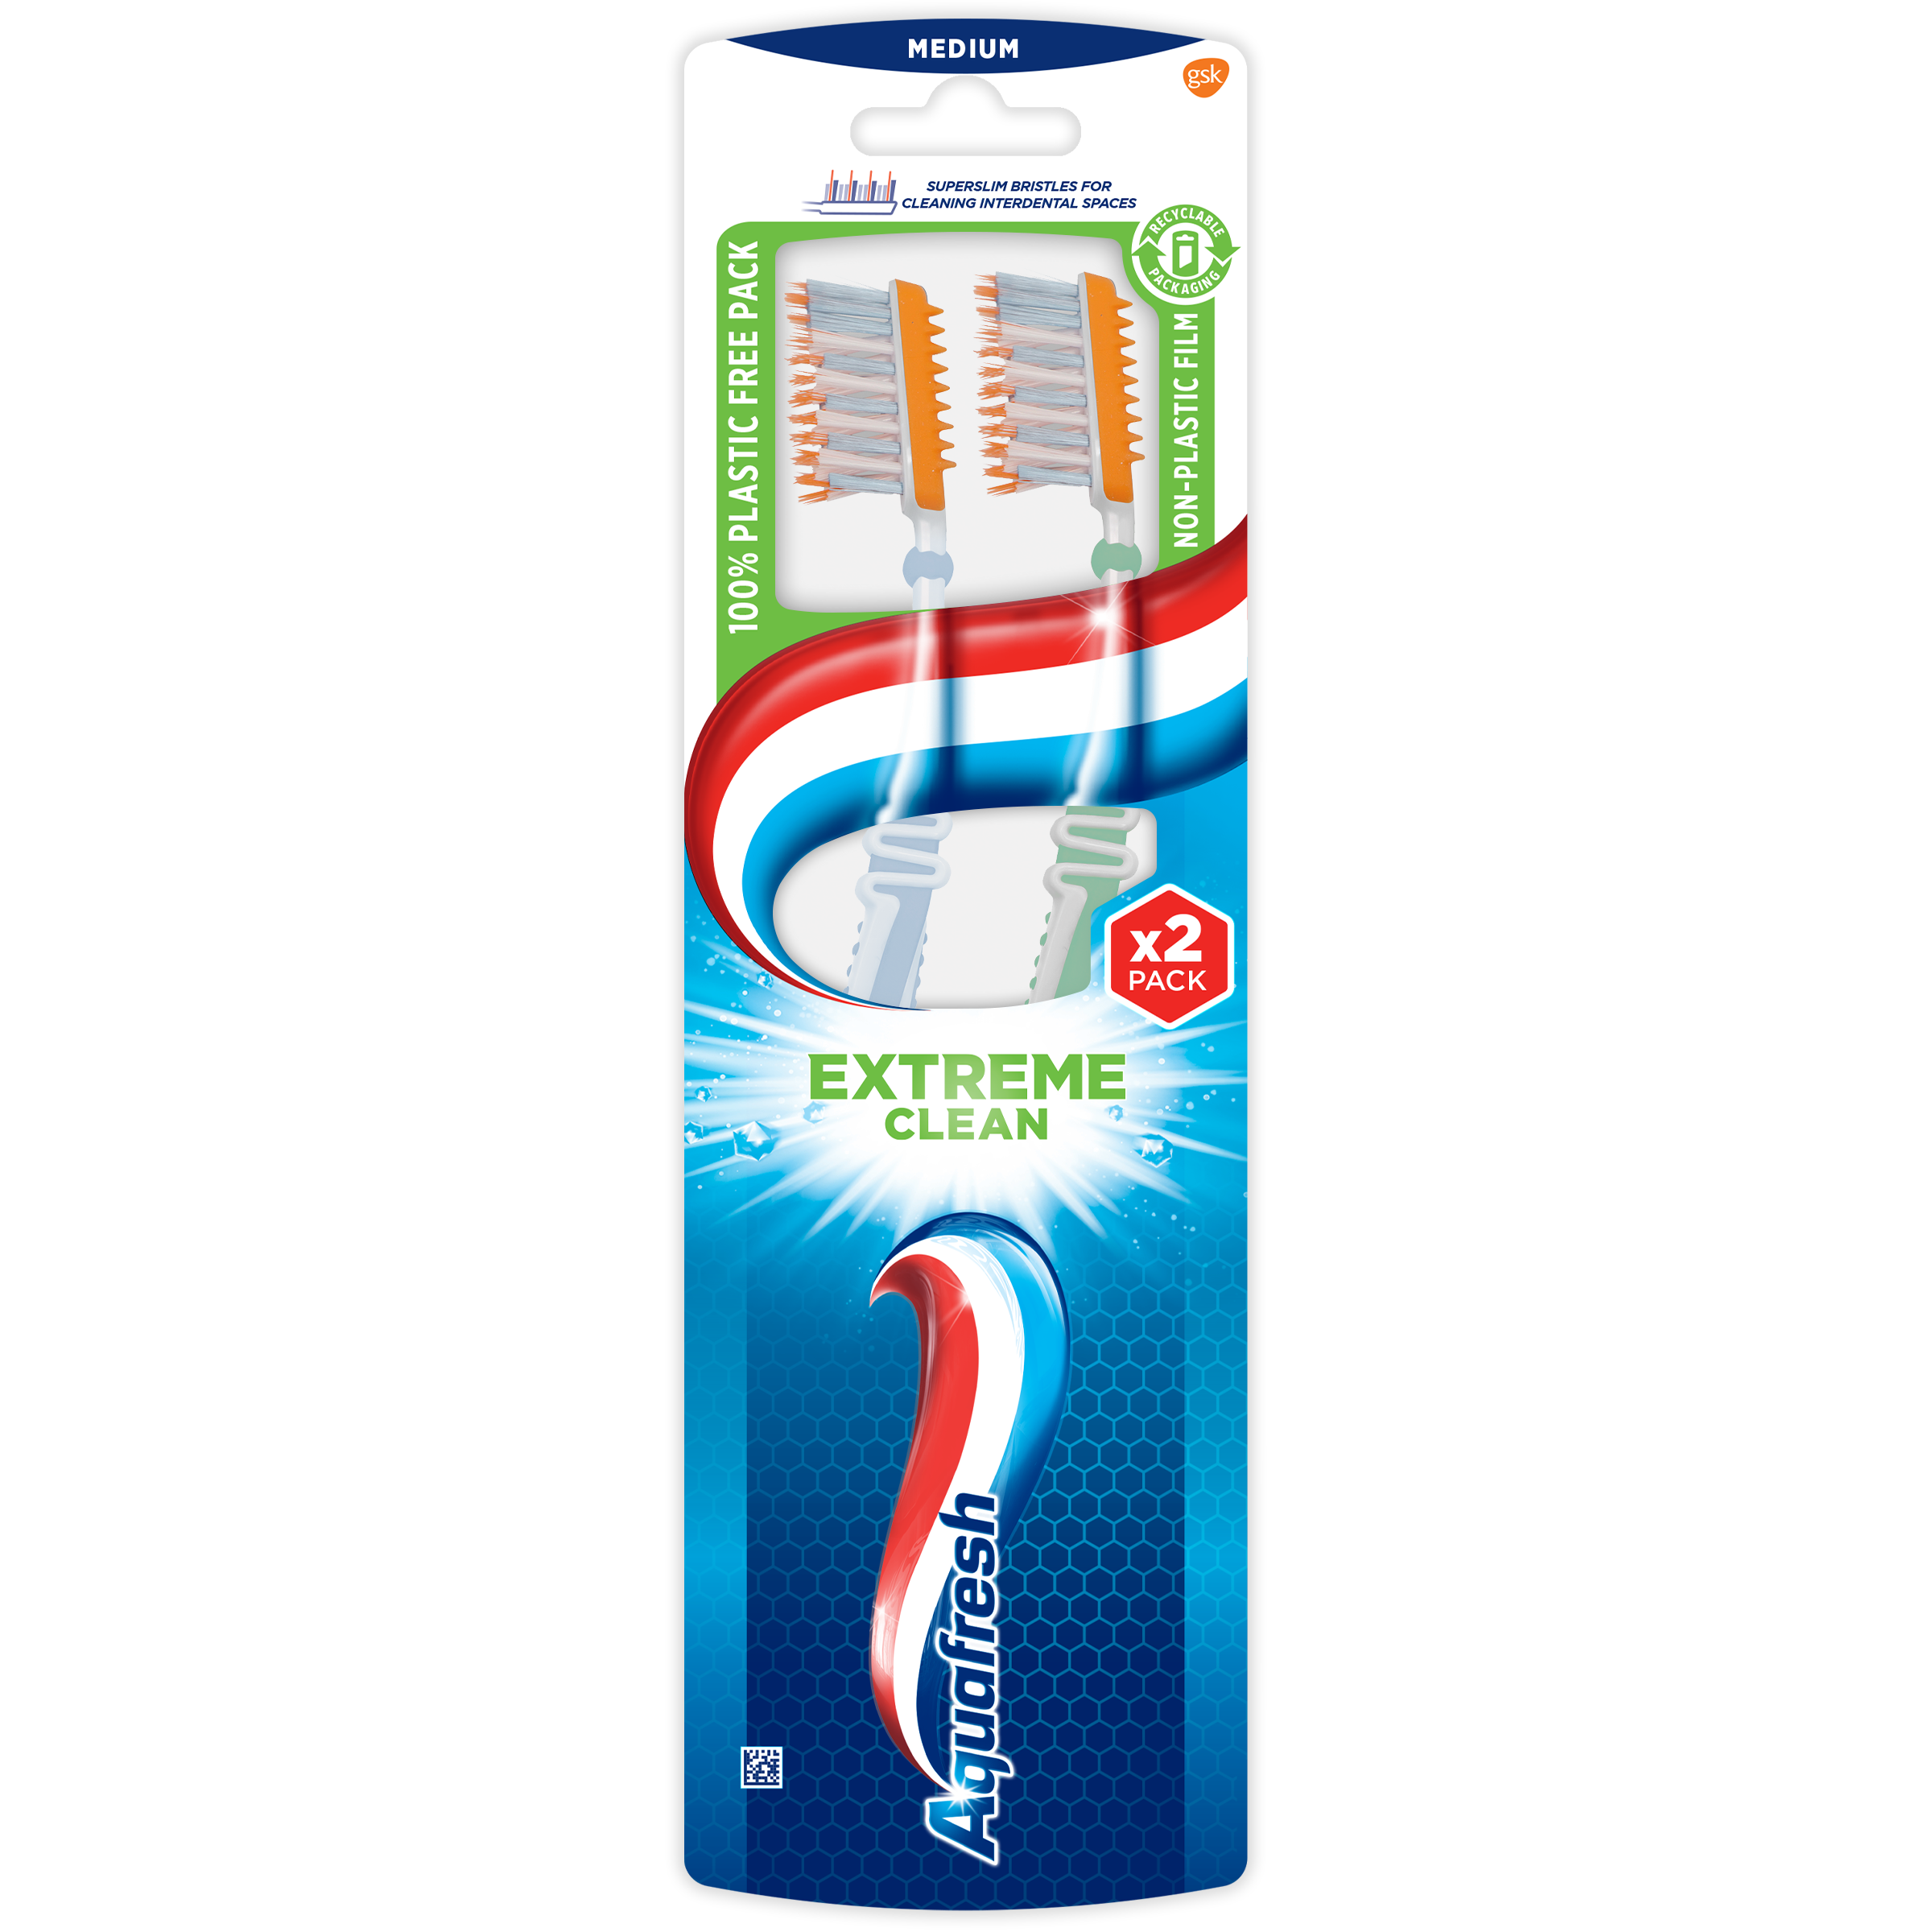 Зубная щетка Aquafresh Extreme Clean Medium 1+1, средняя, в ассортименте, 2 шт. - фото 2